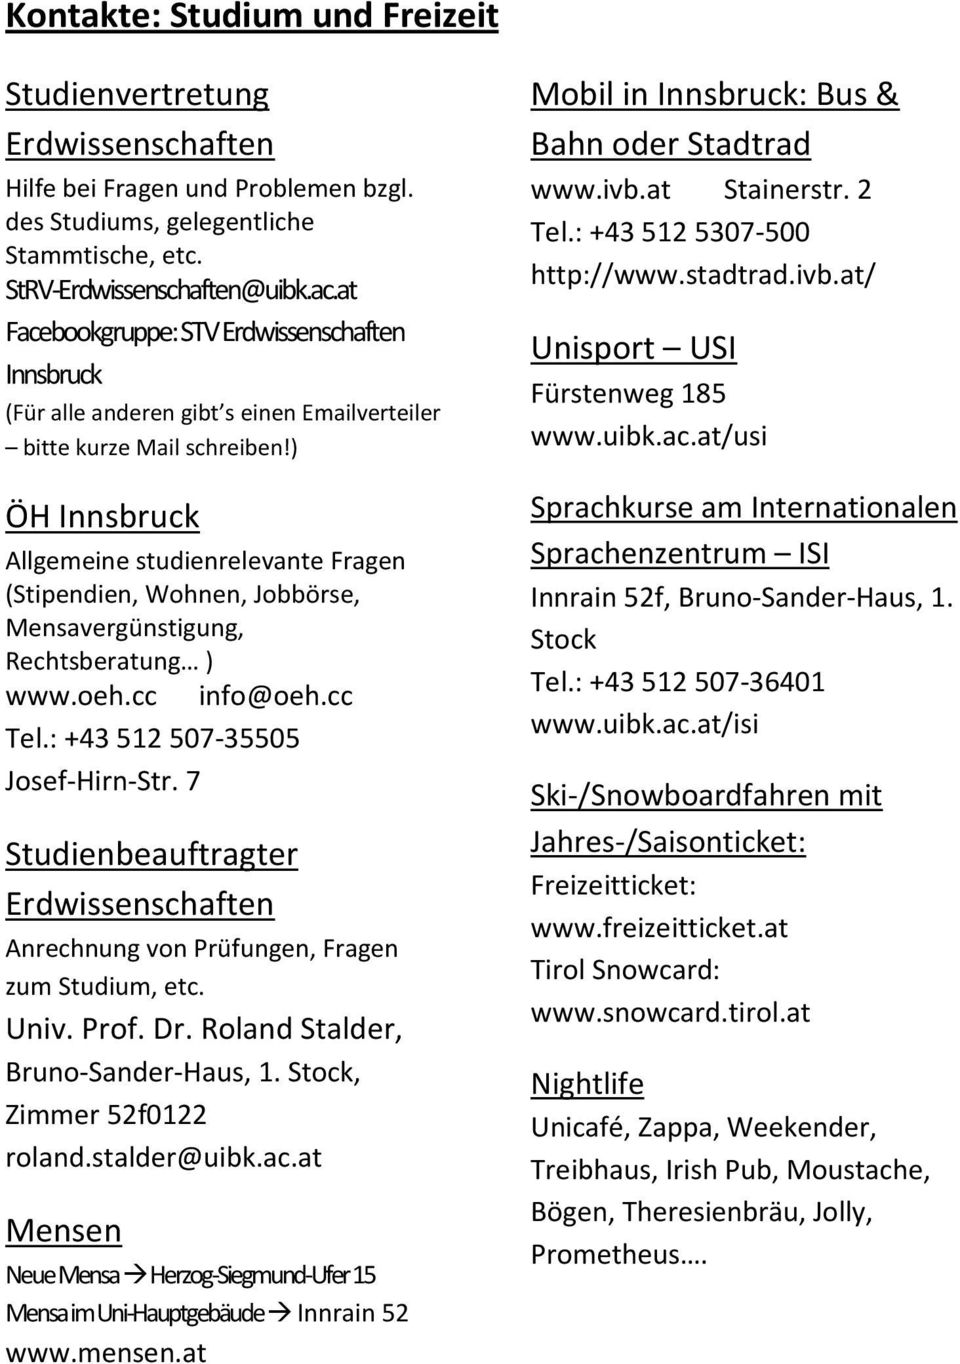 ) ÖH Innsbruck Allgemeine studienrelevante Fragen (Stipendien, Wohnen, Jobbörse, Mensavergünstigung, Rechtsberatung ) www.oeh.cc info@oeh.cc Tel.: +43 512 507-35505 Josef-Hirn-Str.